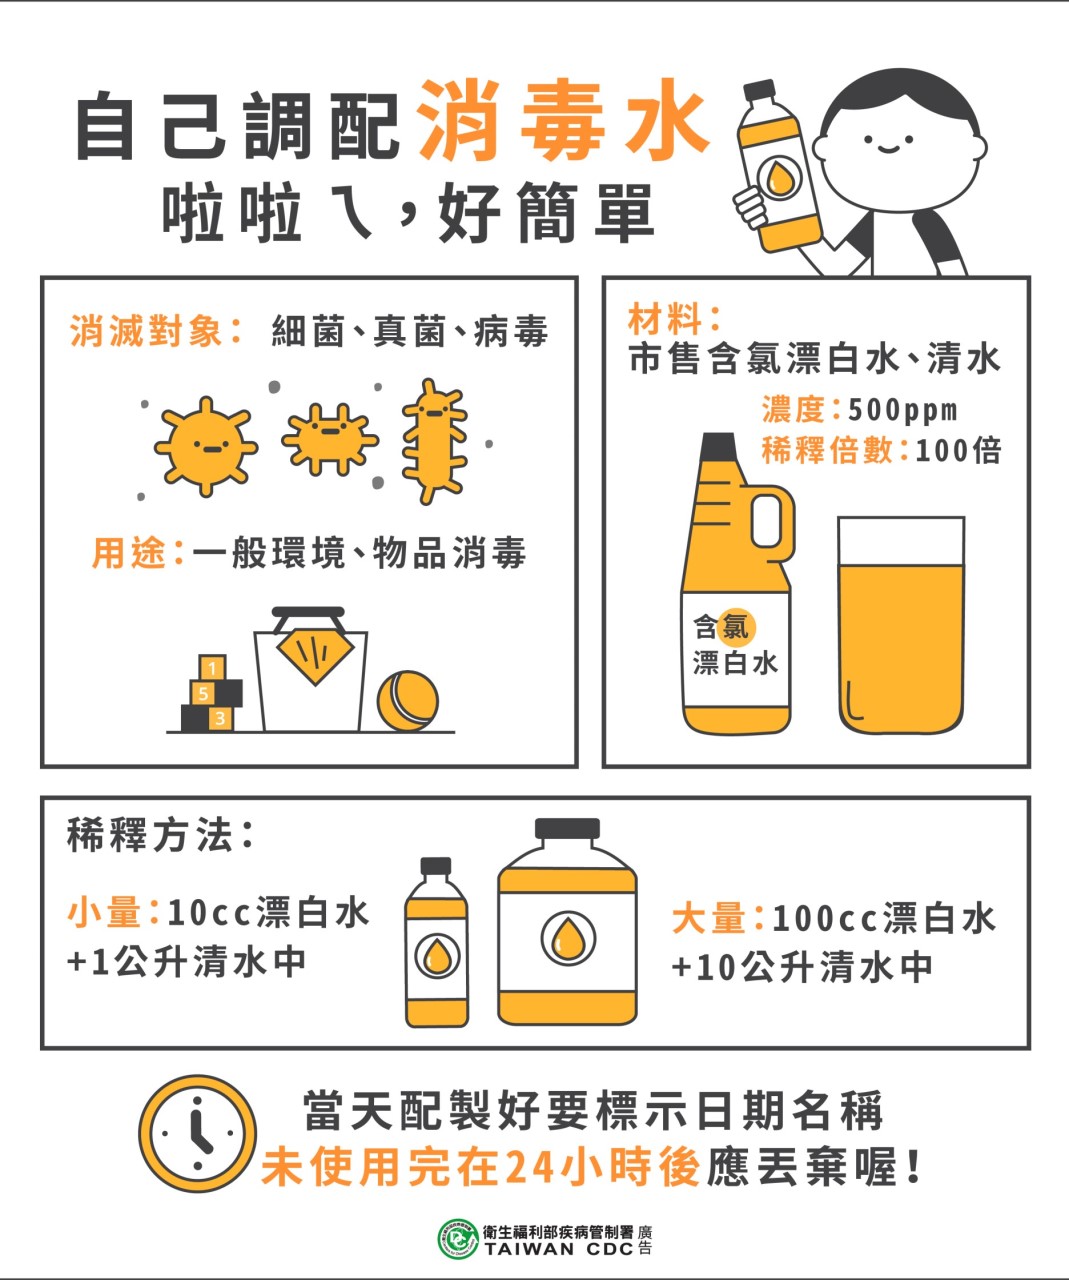 中央社 フォーカス台湾日本語編集部 Di Twitter 台湾 では新型肺炎で延期されていた新学期が来週いよいよ始まります 保健当局の公式ラインでは 漂白剤を使った消毒液の作り方を紹介 台湾 語で まぜまぜする を表す 拉拉ㄟ という親しみやすい言葉とかわいい